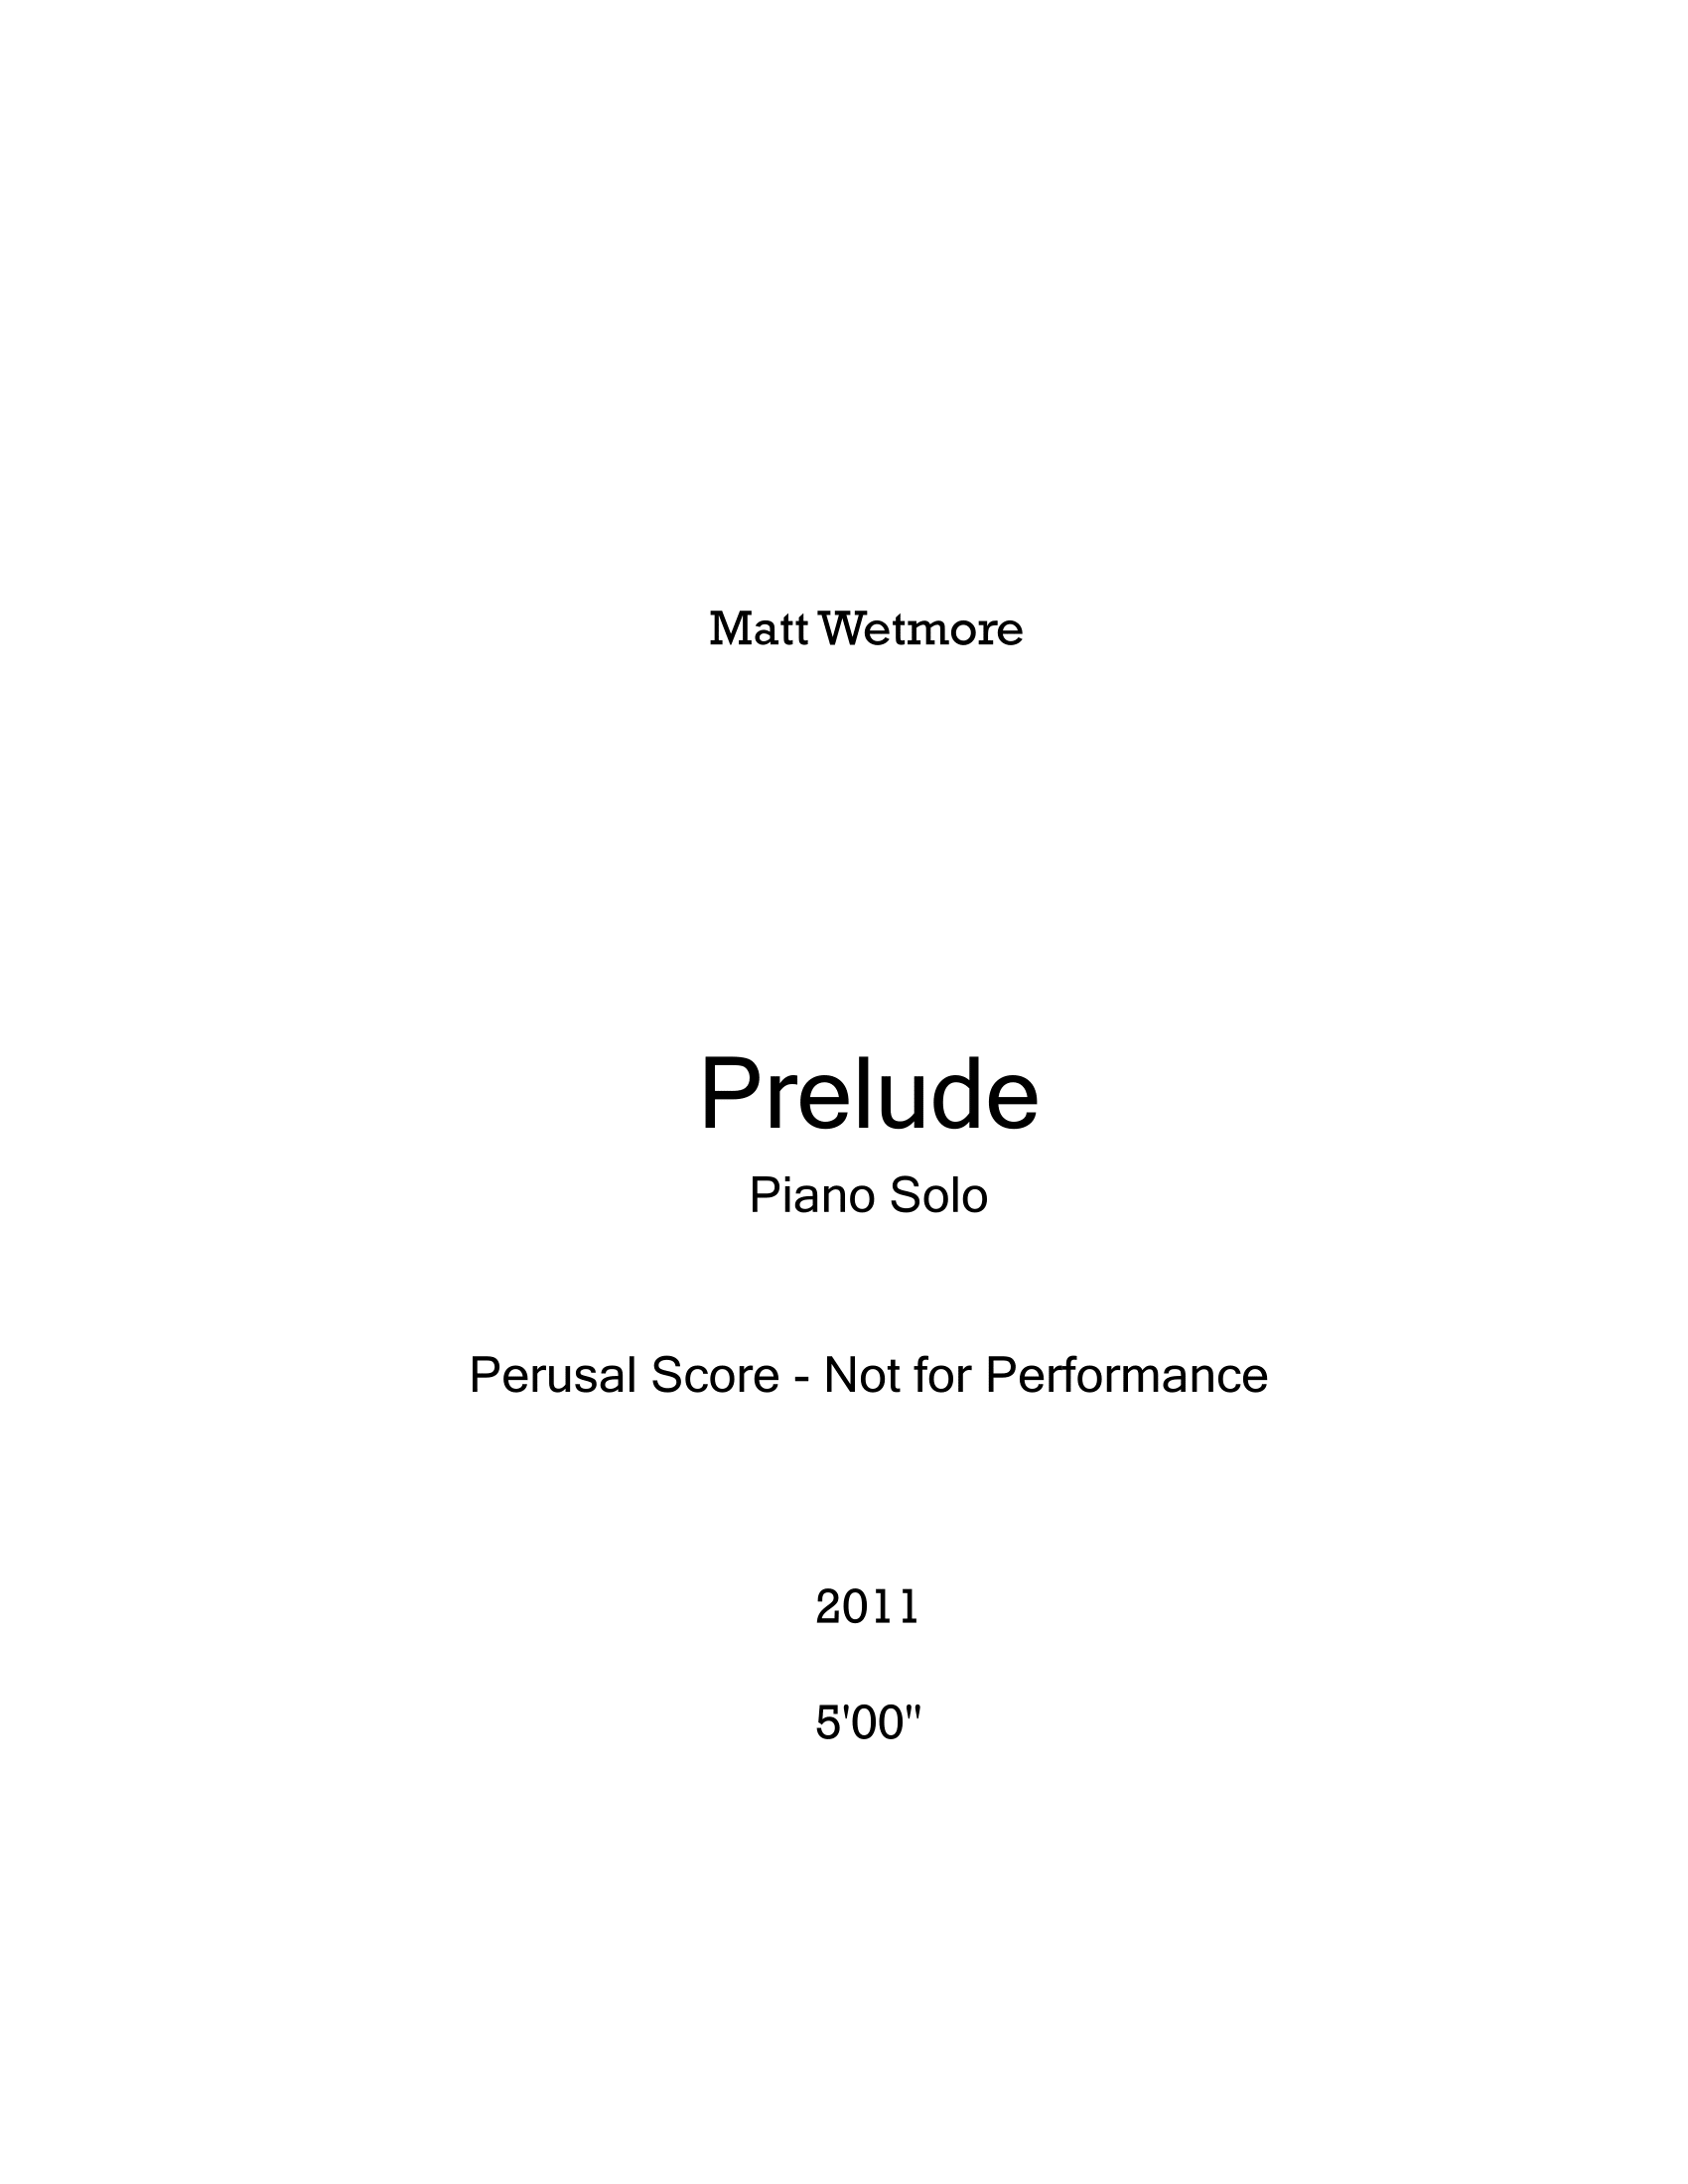 Prelude Perusal-1.png